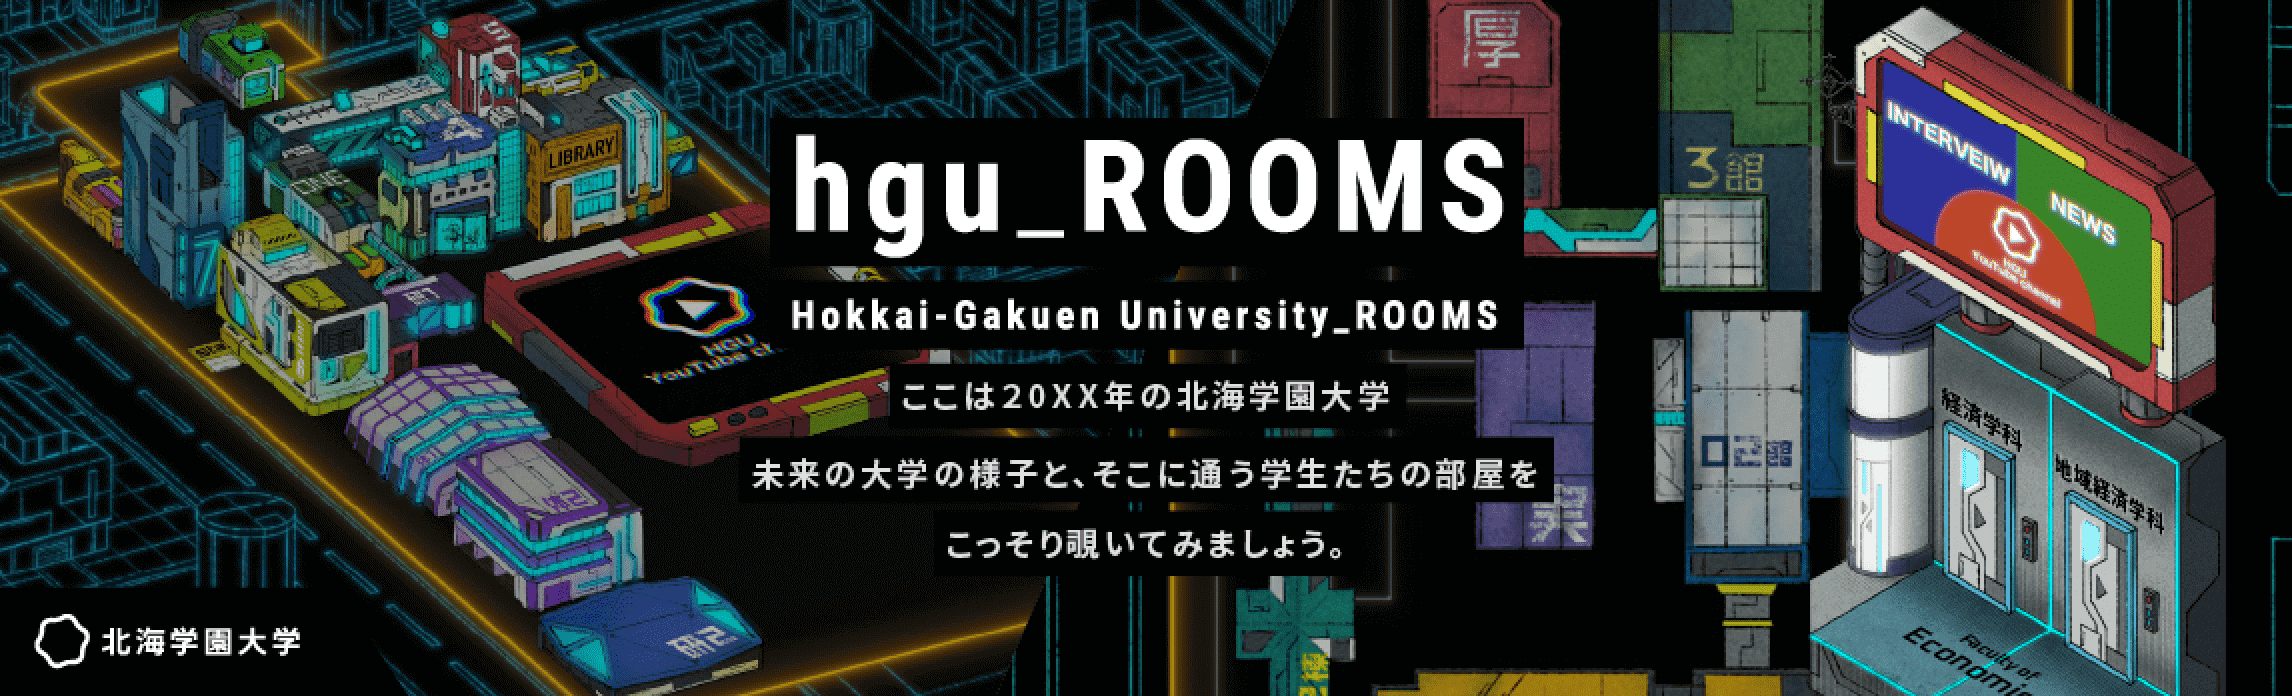 hgu_ROOMS ここは20XX年の北海学園大学 未来の大学の様子と、そこに通う学生たちの部屋をこっそり覗いてみましょう。